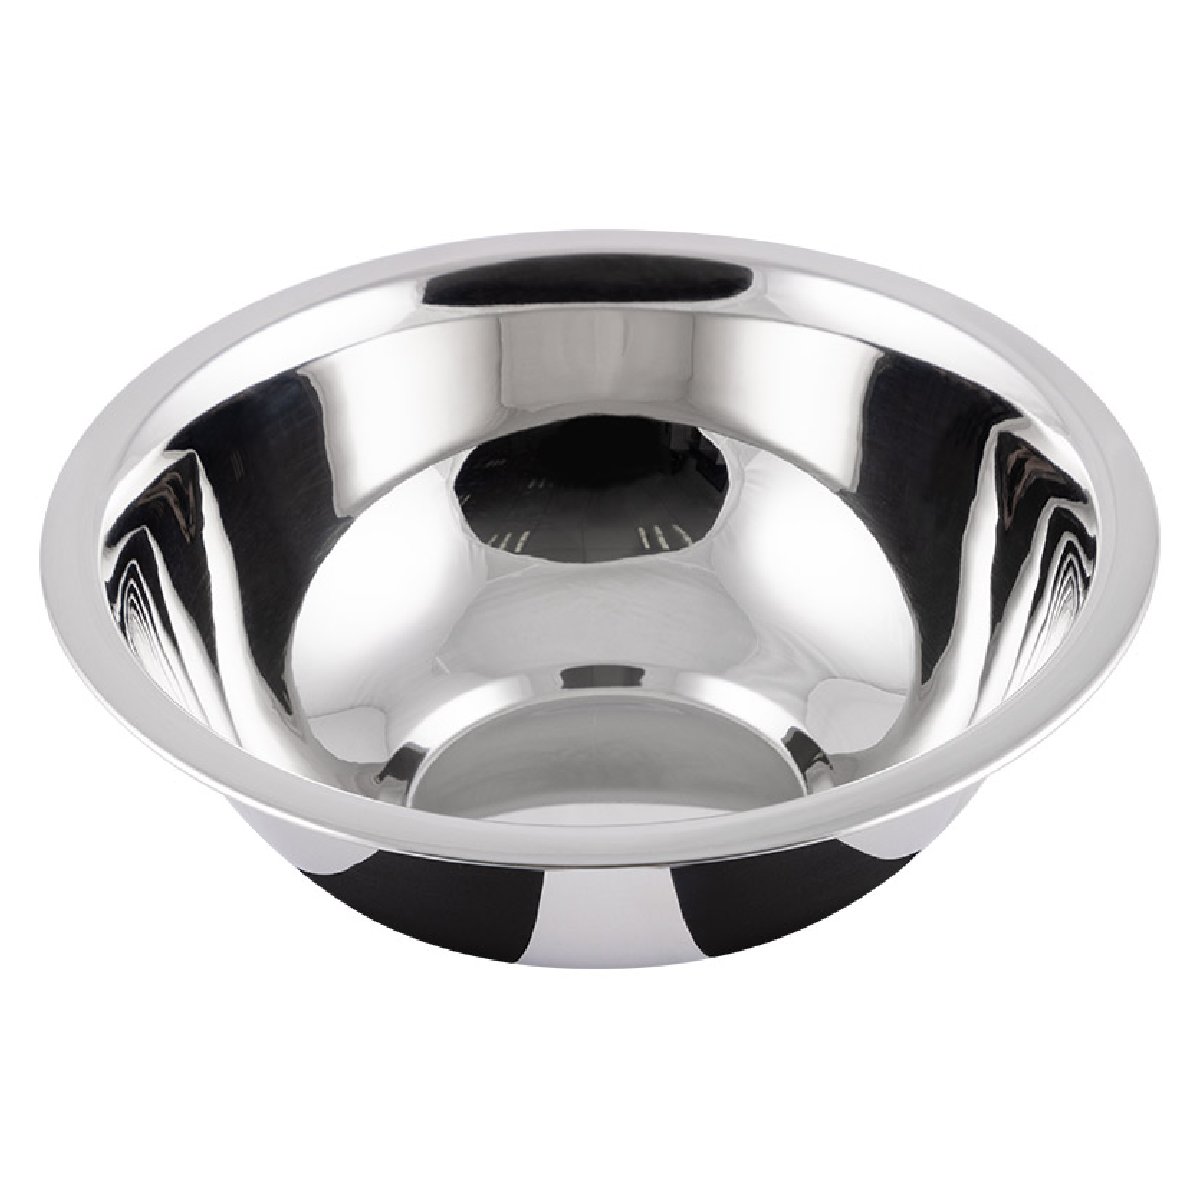 Миска Bowl-Roll-15, объем 600 мл, нержавеющая сталь, зеркальная полировка, 16x6 см, Mallony (103825)Купить